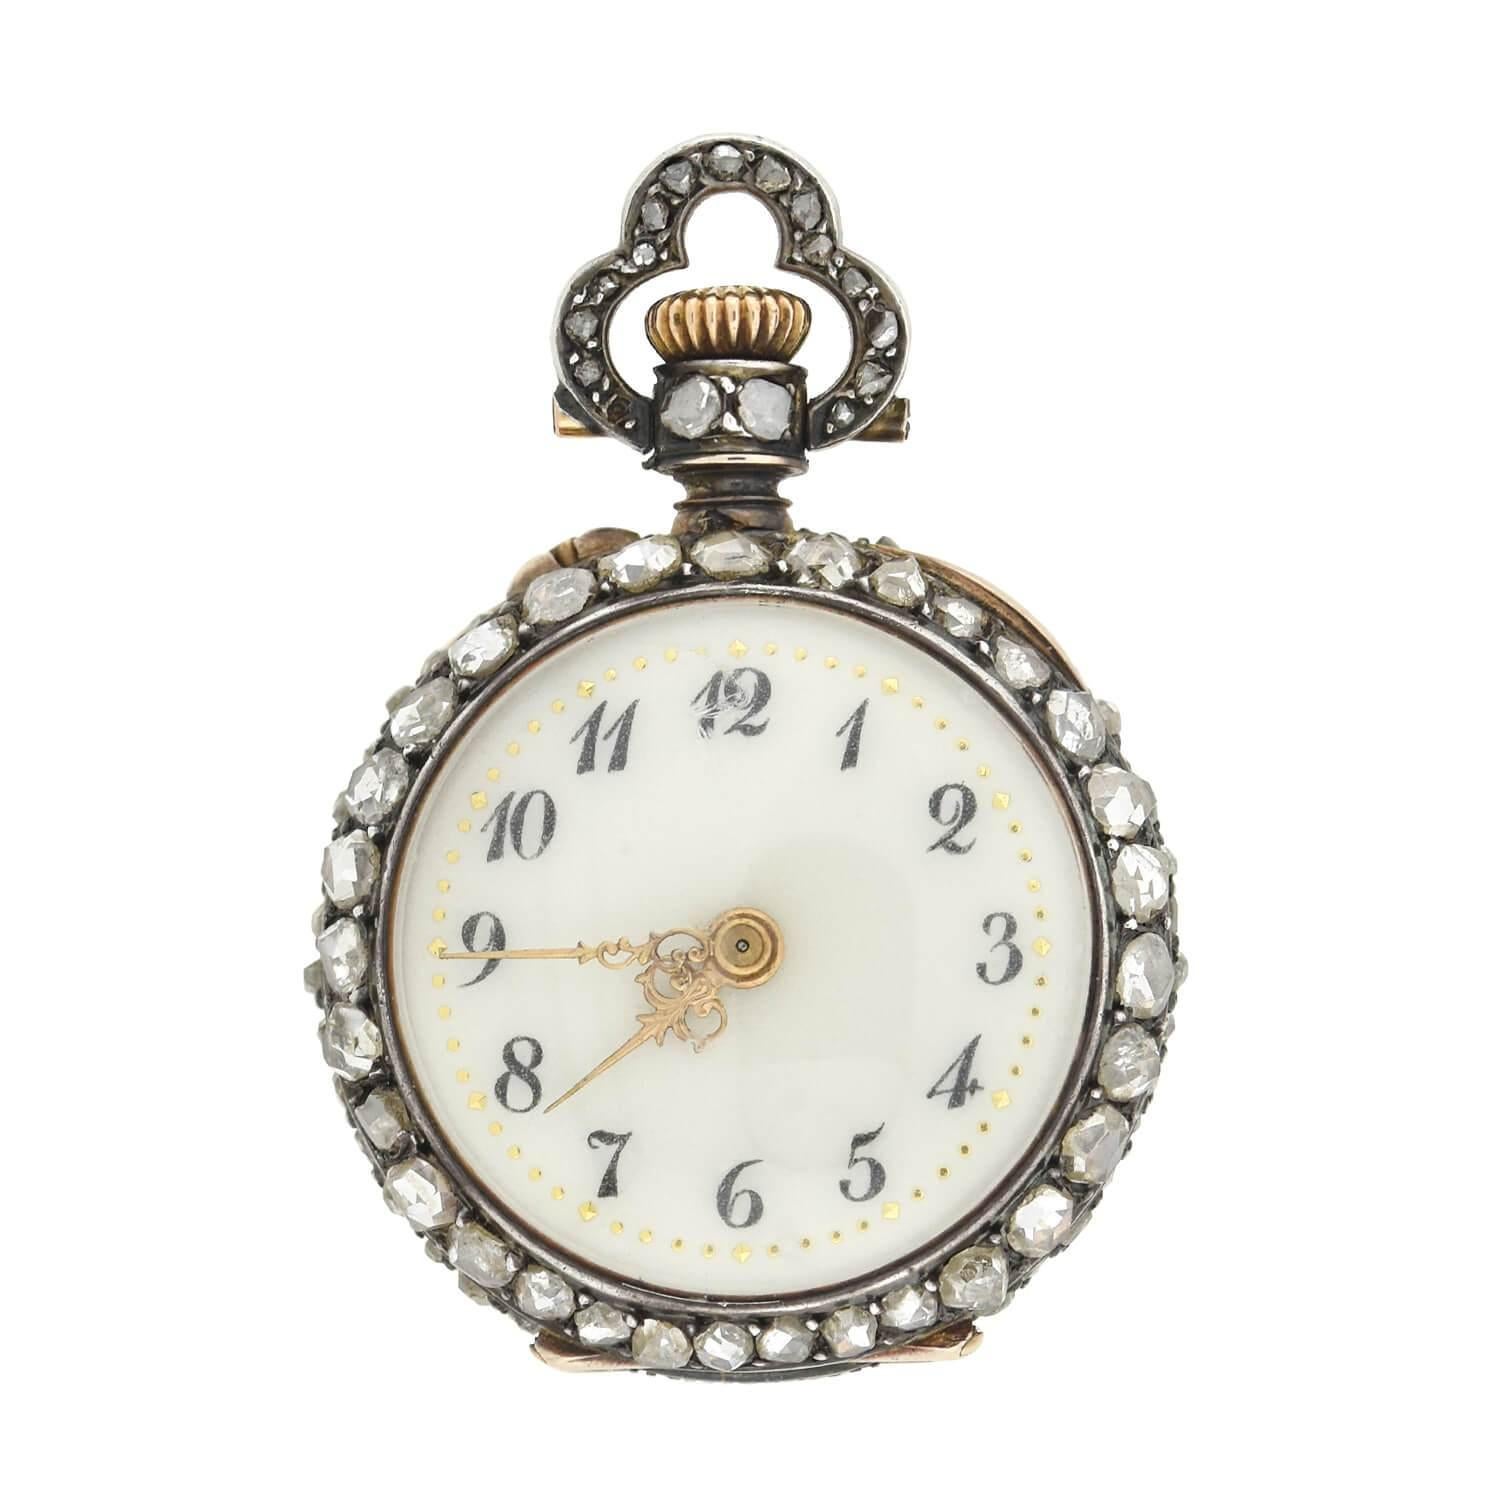 Eine absolut exquisite Diamant-Taschenuhr aus der viktorianischen Ära (1880er Jahre)! Dieses außergewöhnliche Schmuckstück französischer Herkunft ist aus 18-karätigem Gold und Sterlingsilber gefertigt, was ihm einen subtilen Charme von Mischmetall